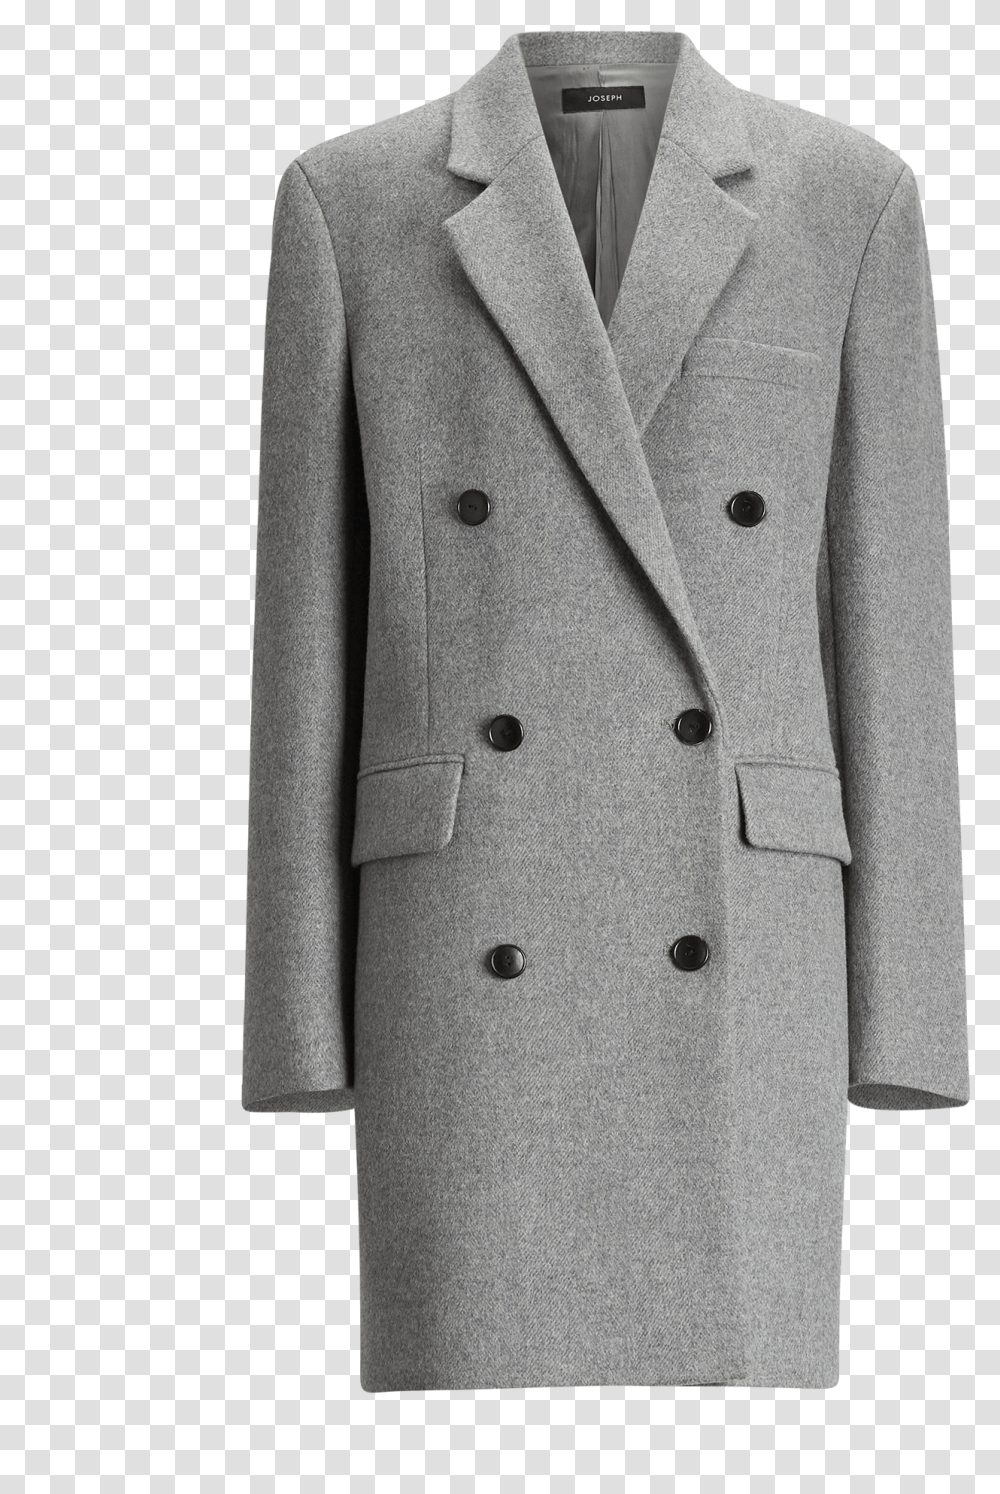 Joseph Elkins Giant Chevron Coat In Grey Coat Chevron, Apparel, Overcoat, Suit Transparent Png